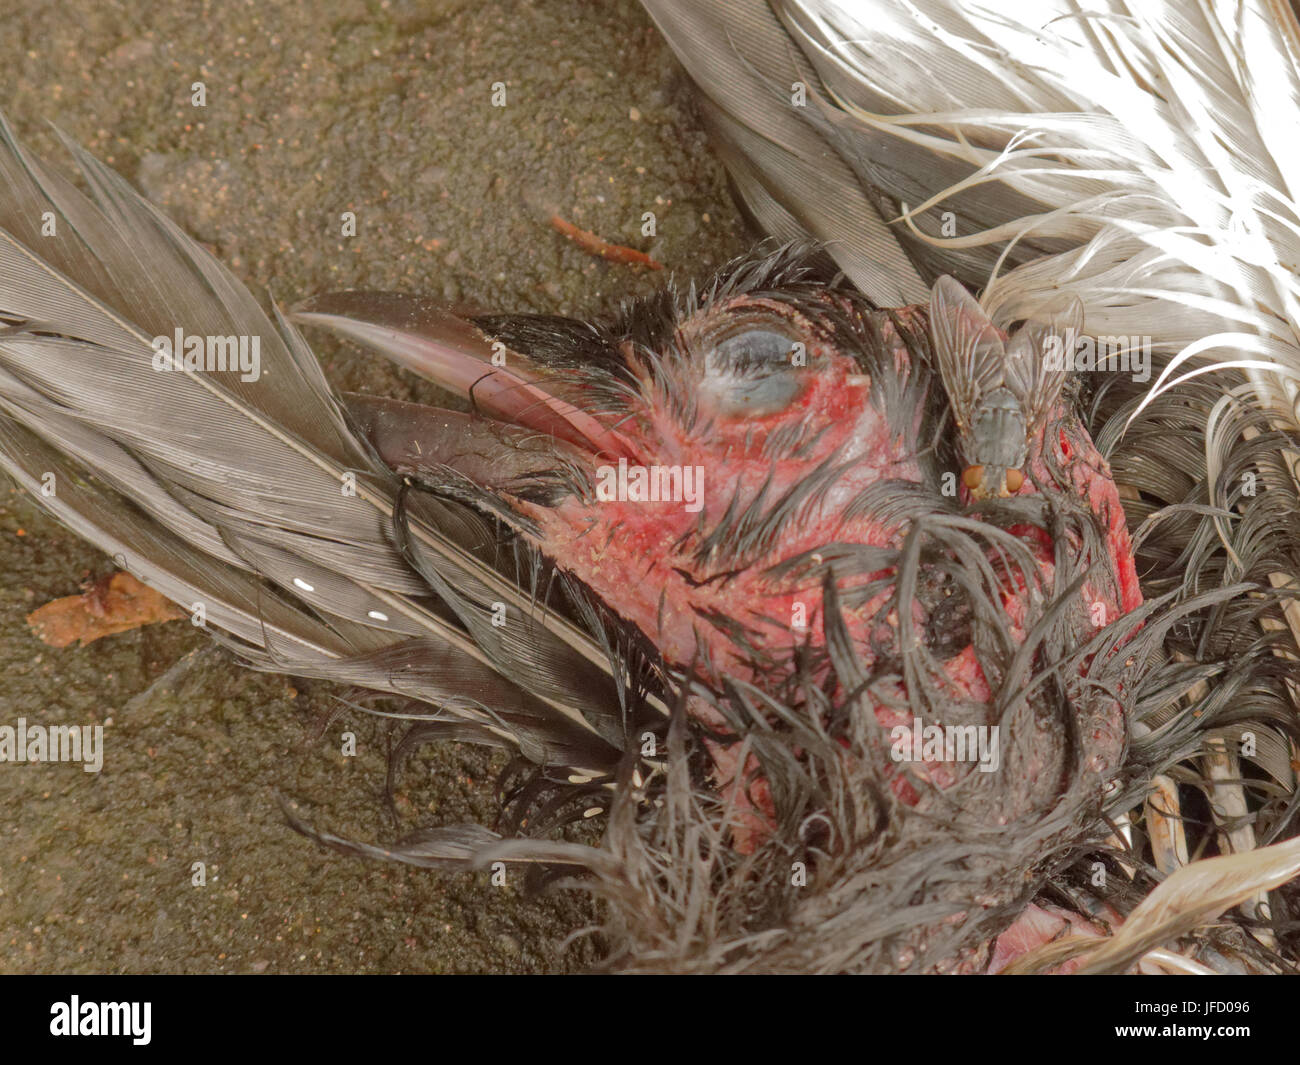 Toter Vogel Roadkill fauligen verwesenden Kadaver Schnabel Krallen Beine fliegen am Auge Stockfoto